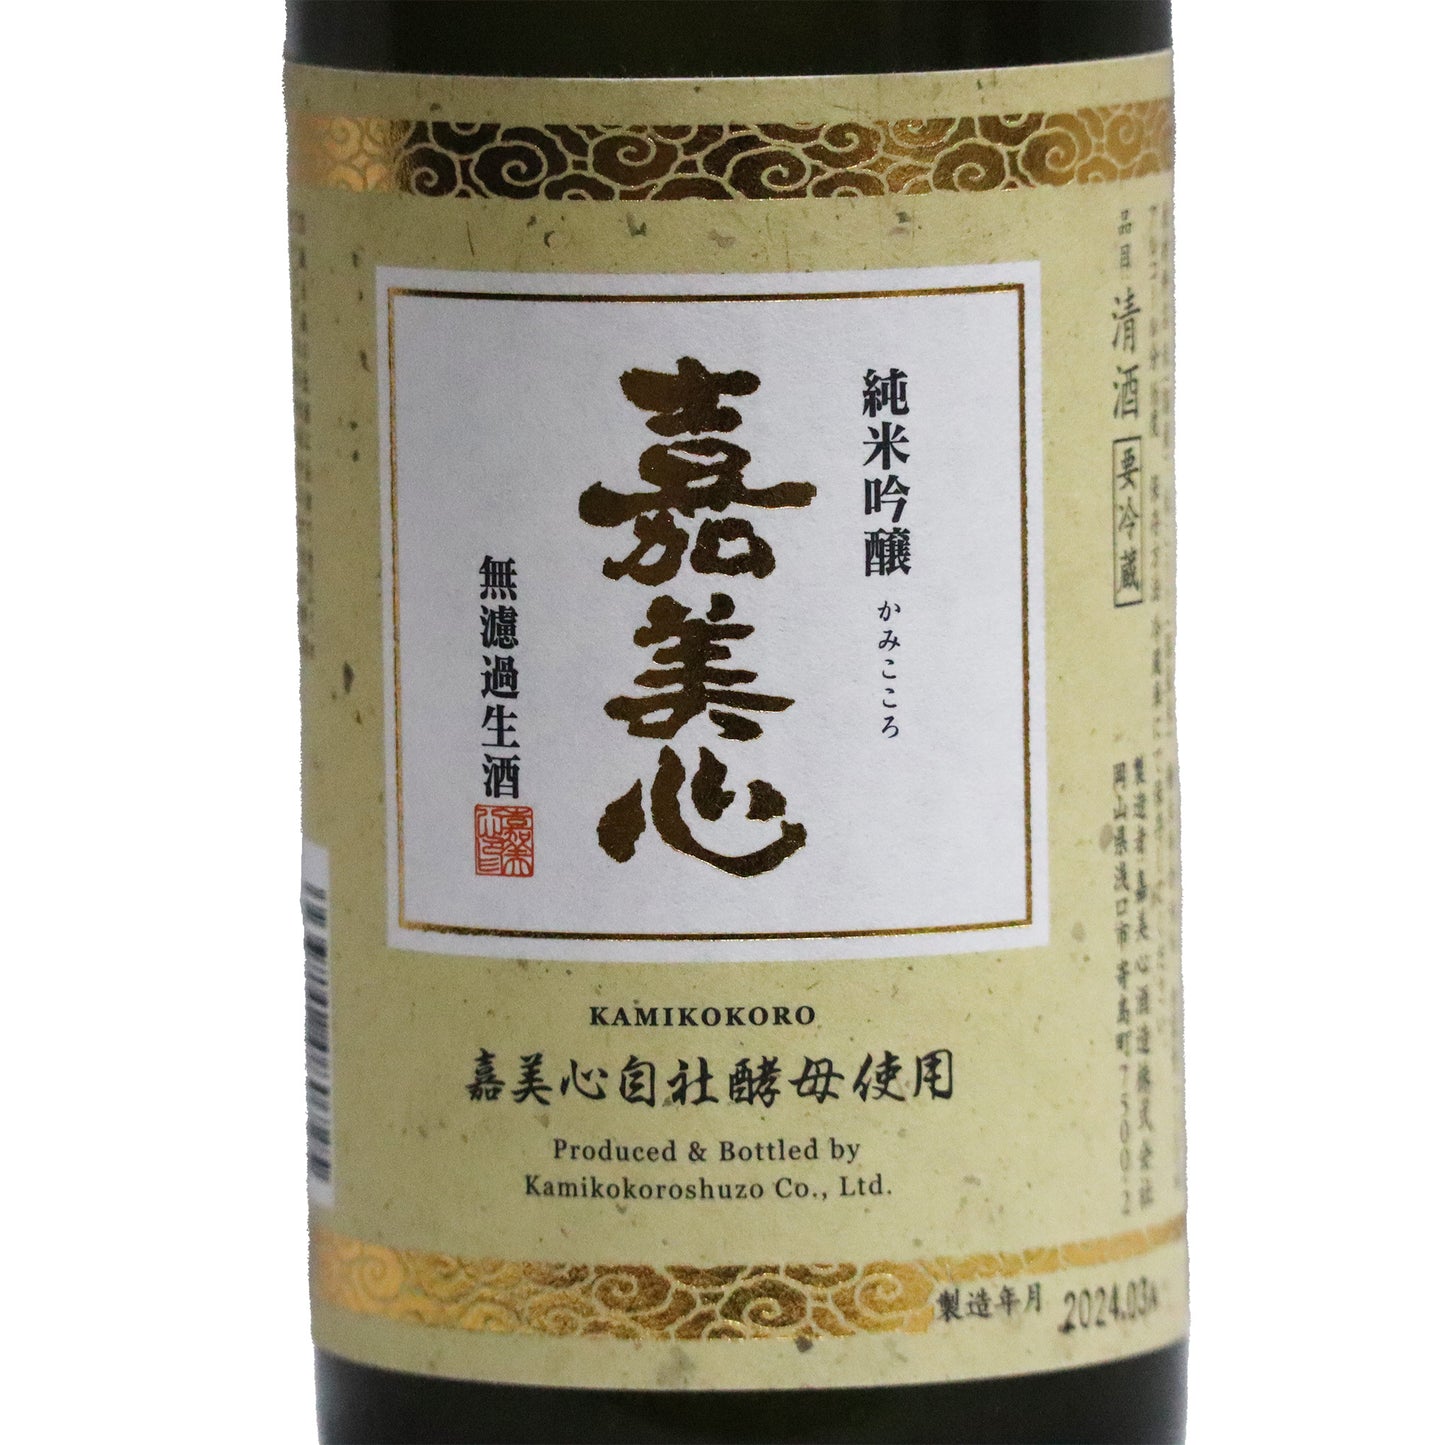 【嘉美心】無濾過 純米吟醸生酒 720ml/嘉美心酒造